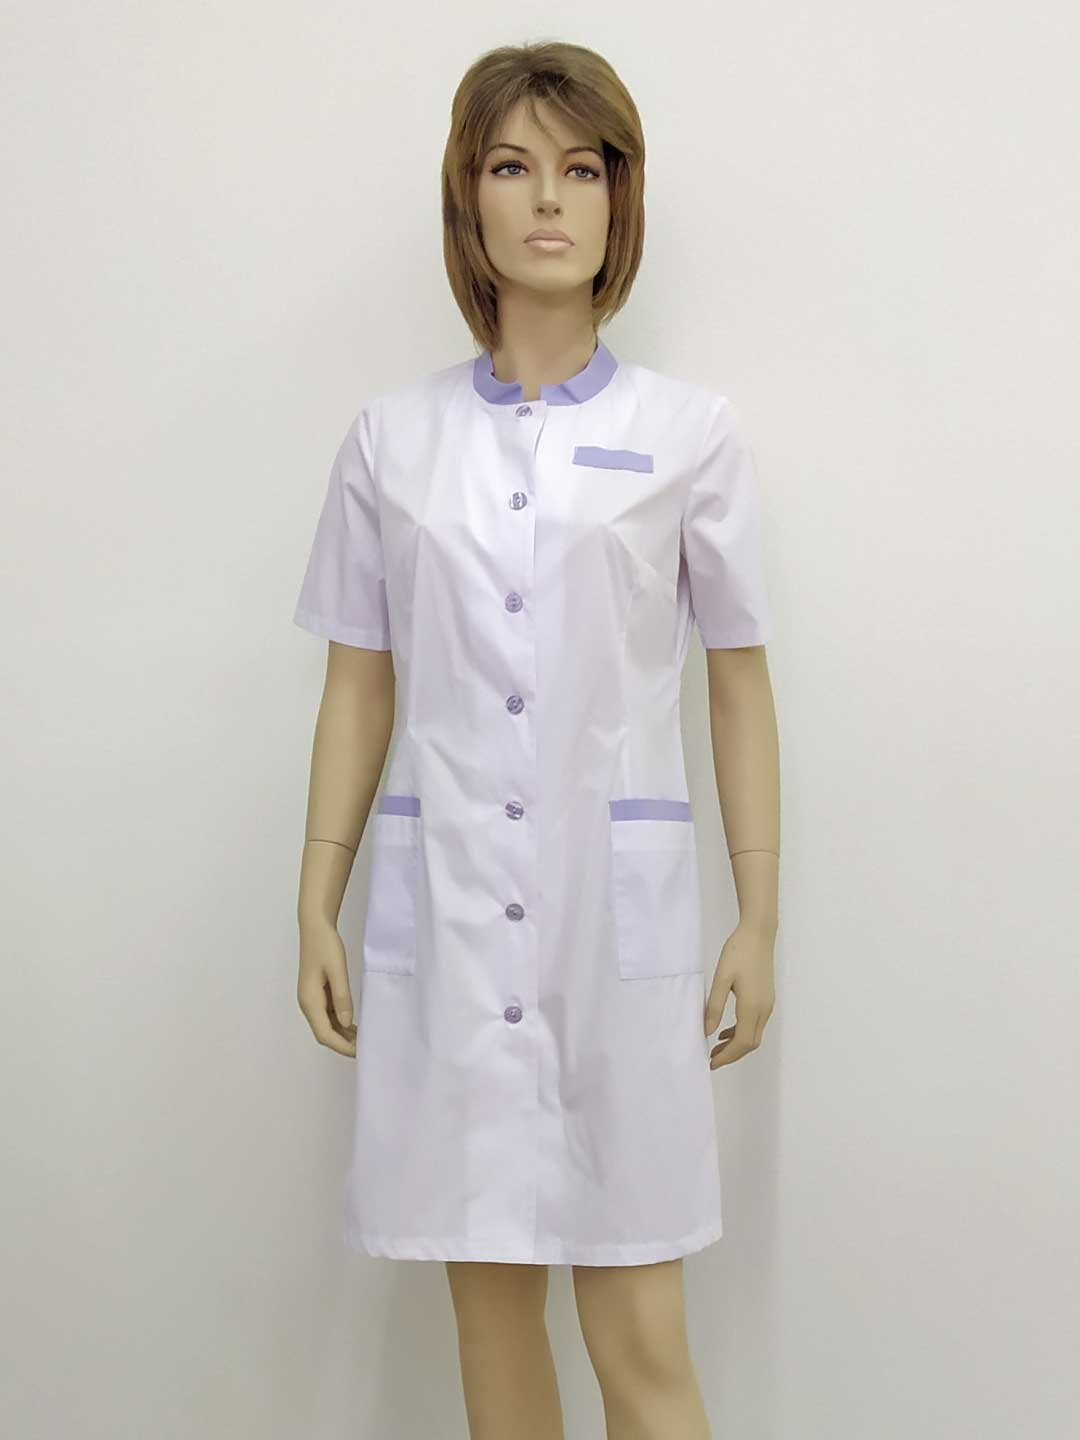 Халат женский, производитель Фабрика швейных изделий №3, модель М-572, рост 164, размер 44, ткань поликот, цвет белый с сиреневой отделкой